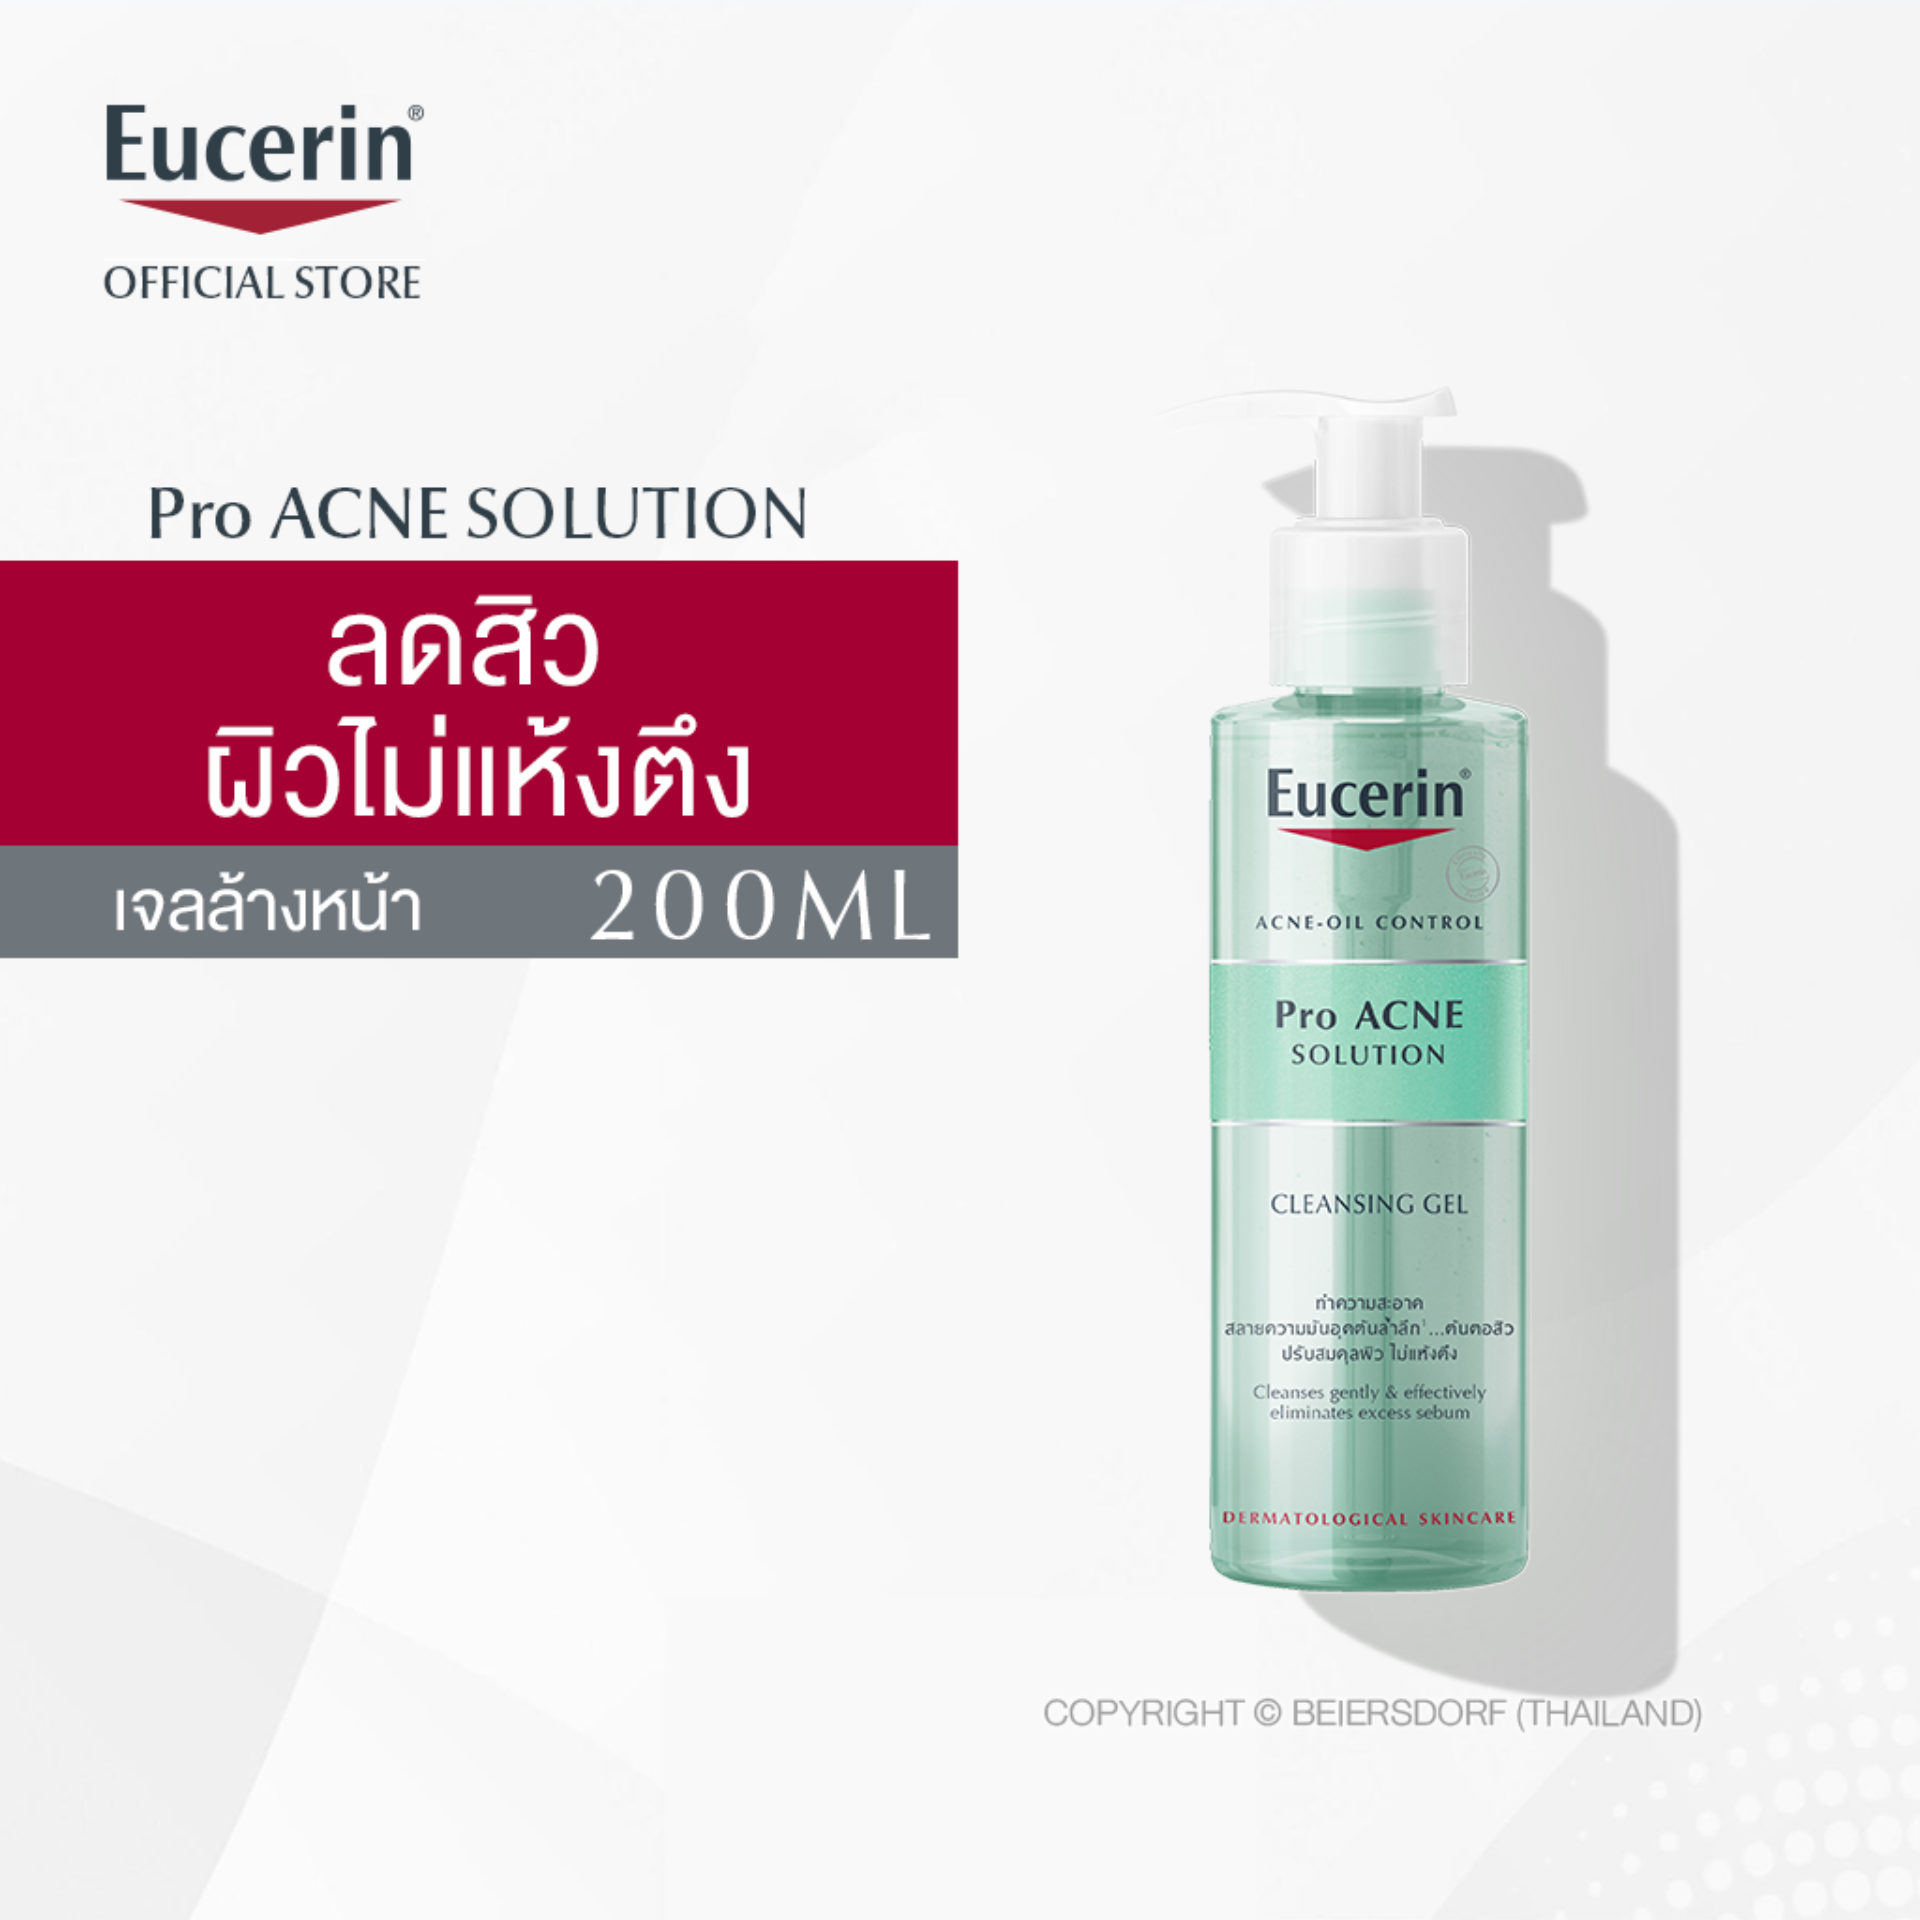 Eucerin Pro Acne Solution Cleansing Gel 200ml ยูเซอริน โปร แอคเน่ โซลูชั่น คลีนซิ่ง เจล เจลล้างหน้า 200ml (ลดปัญหาสิว ลดผิวมัน บำรุงผิวหน้า)